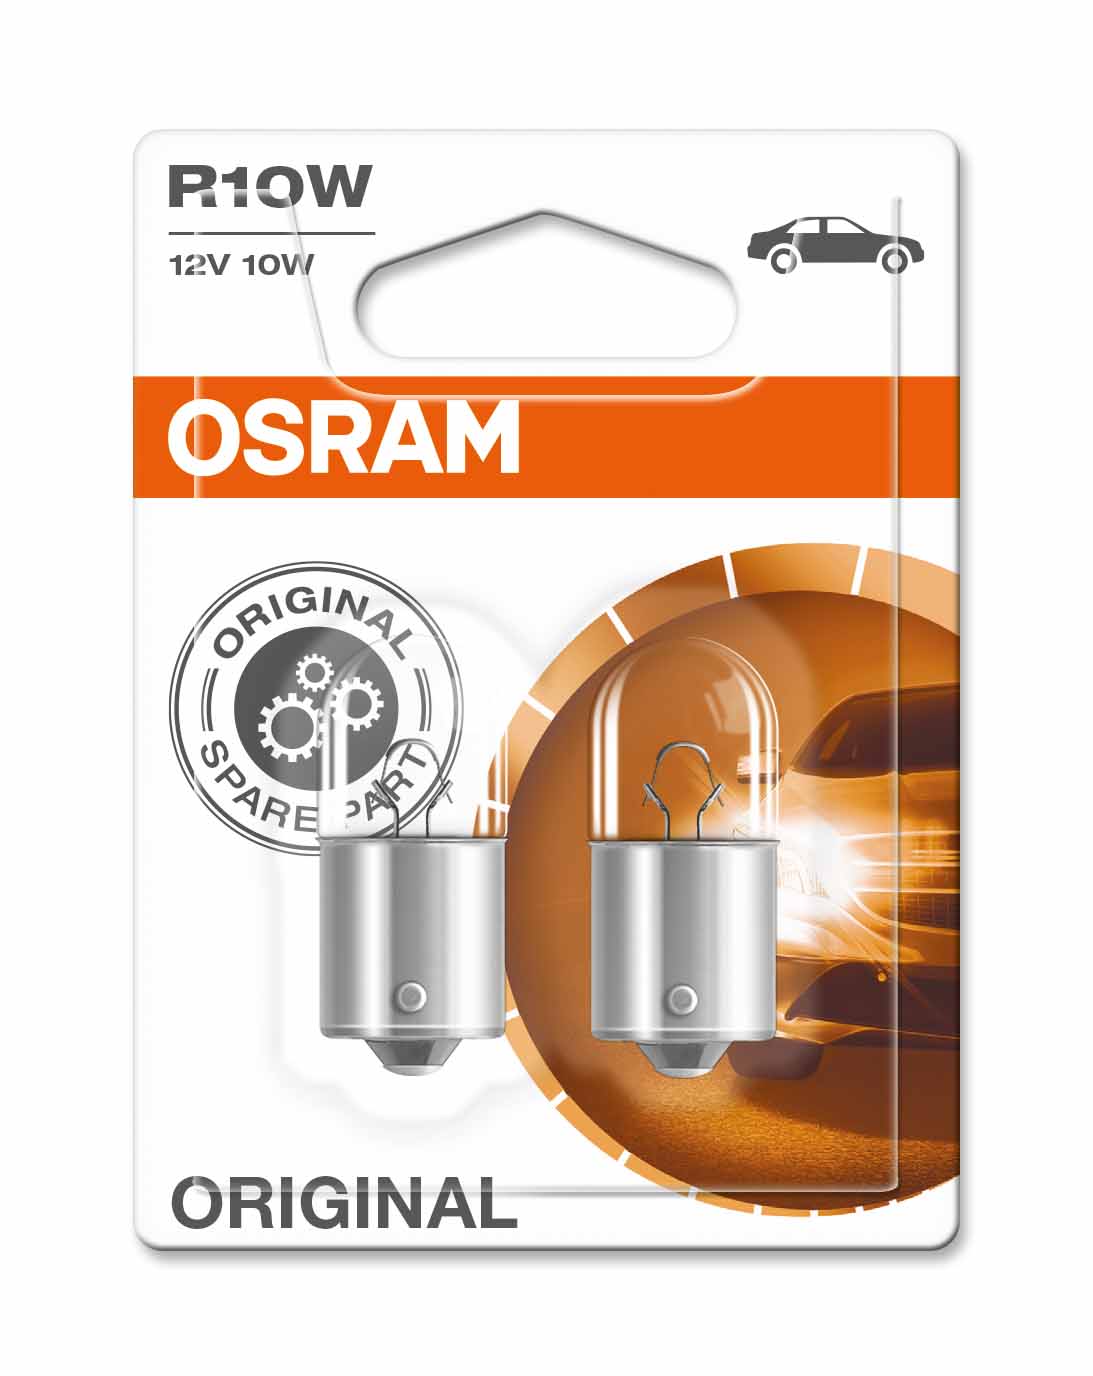 OSRAM R10W 12V 10W - Original - Helder - Set